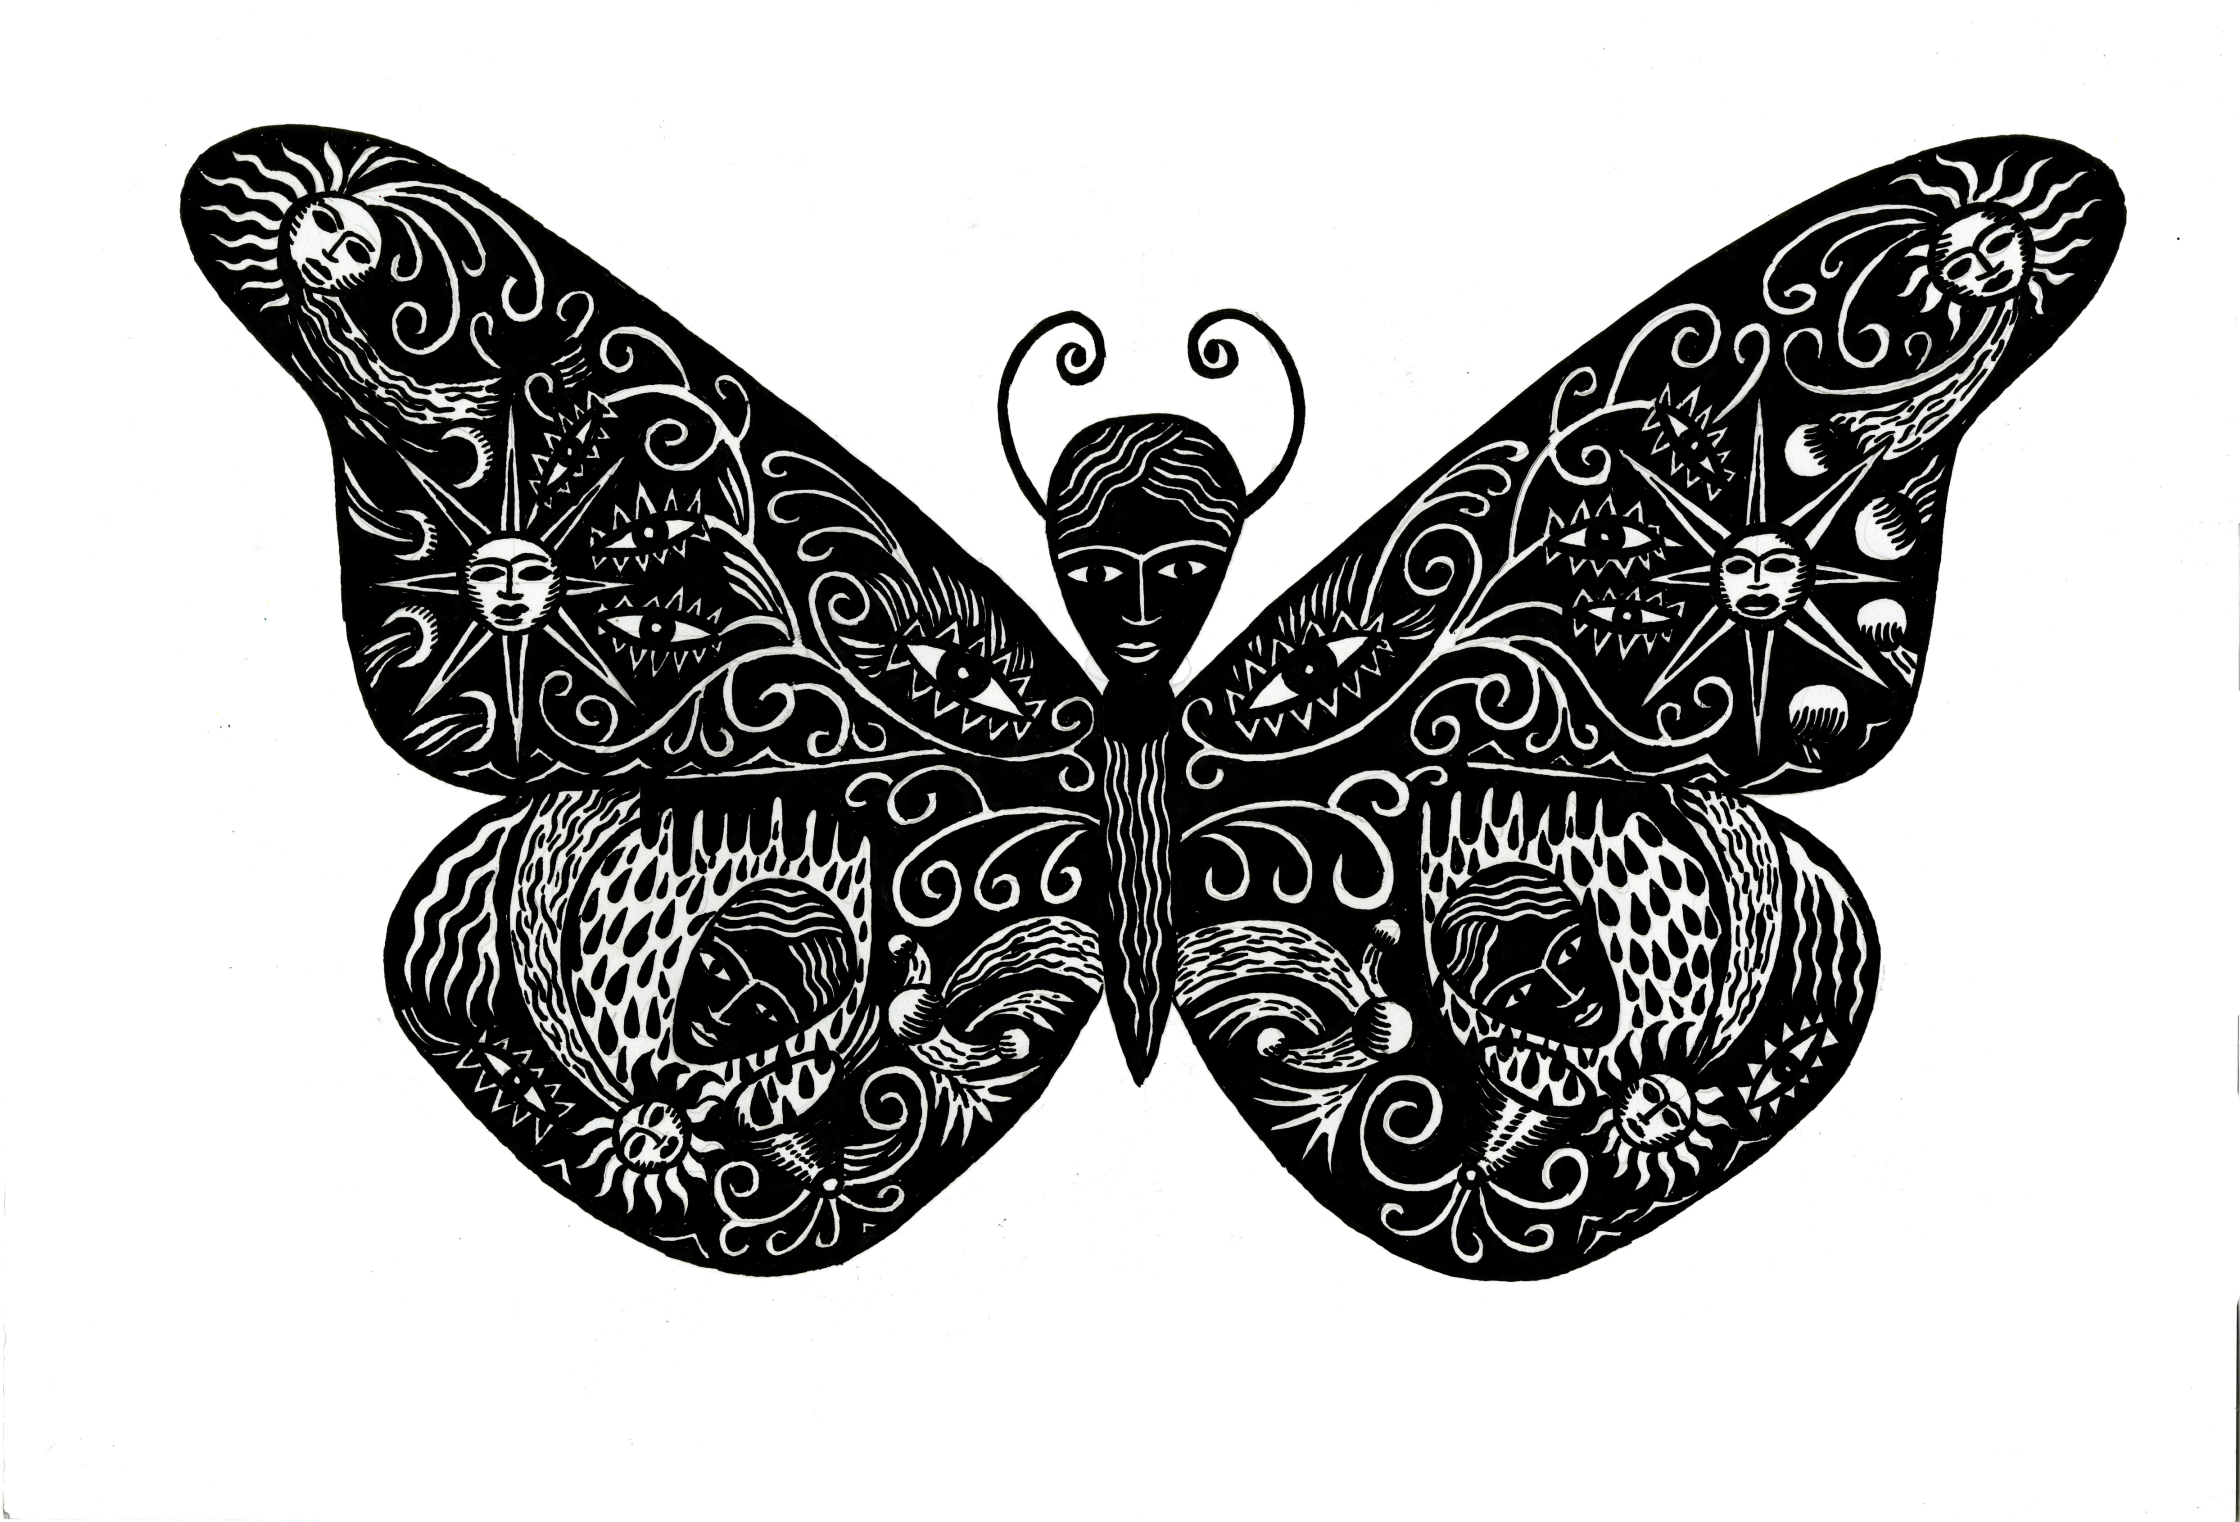 Butterfly Man.JPG